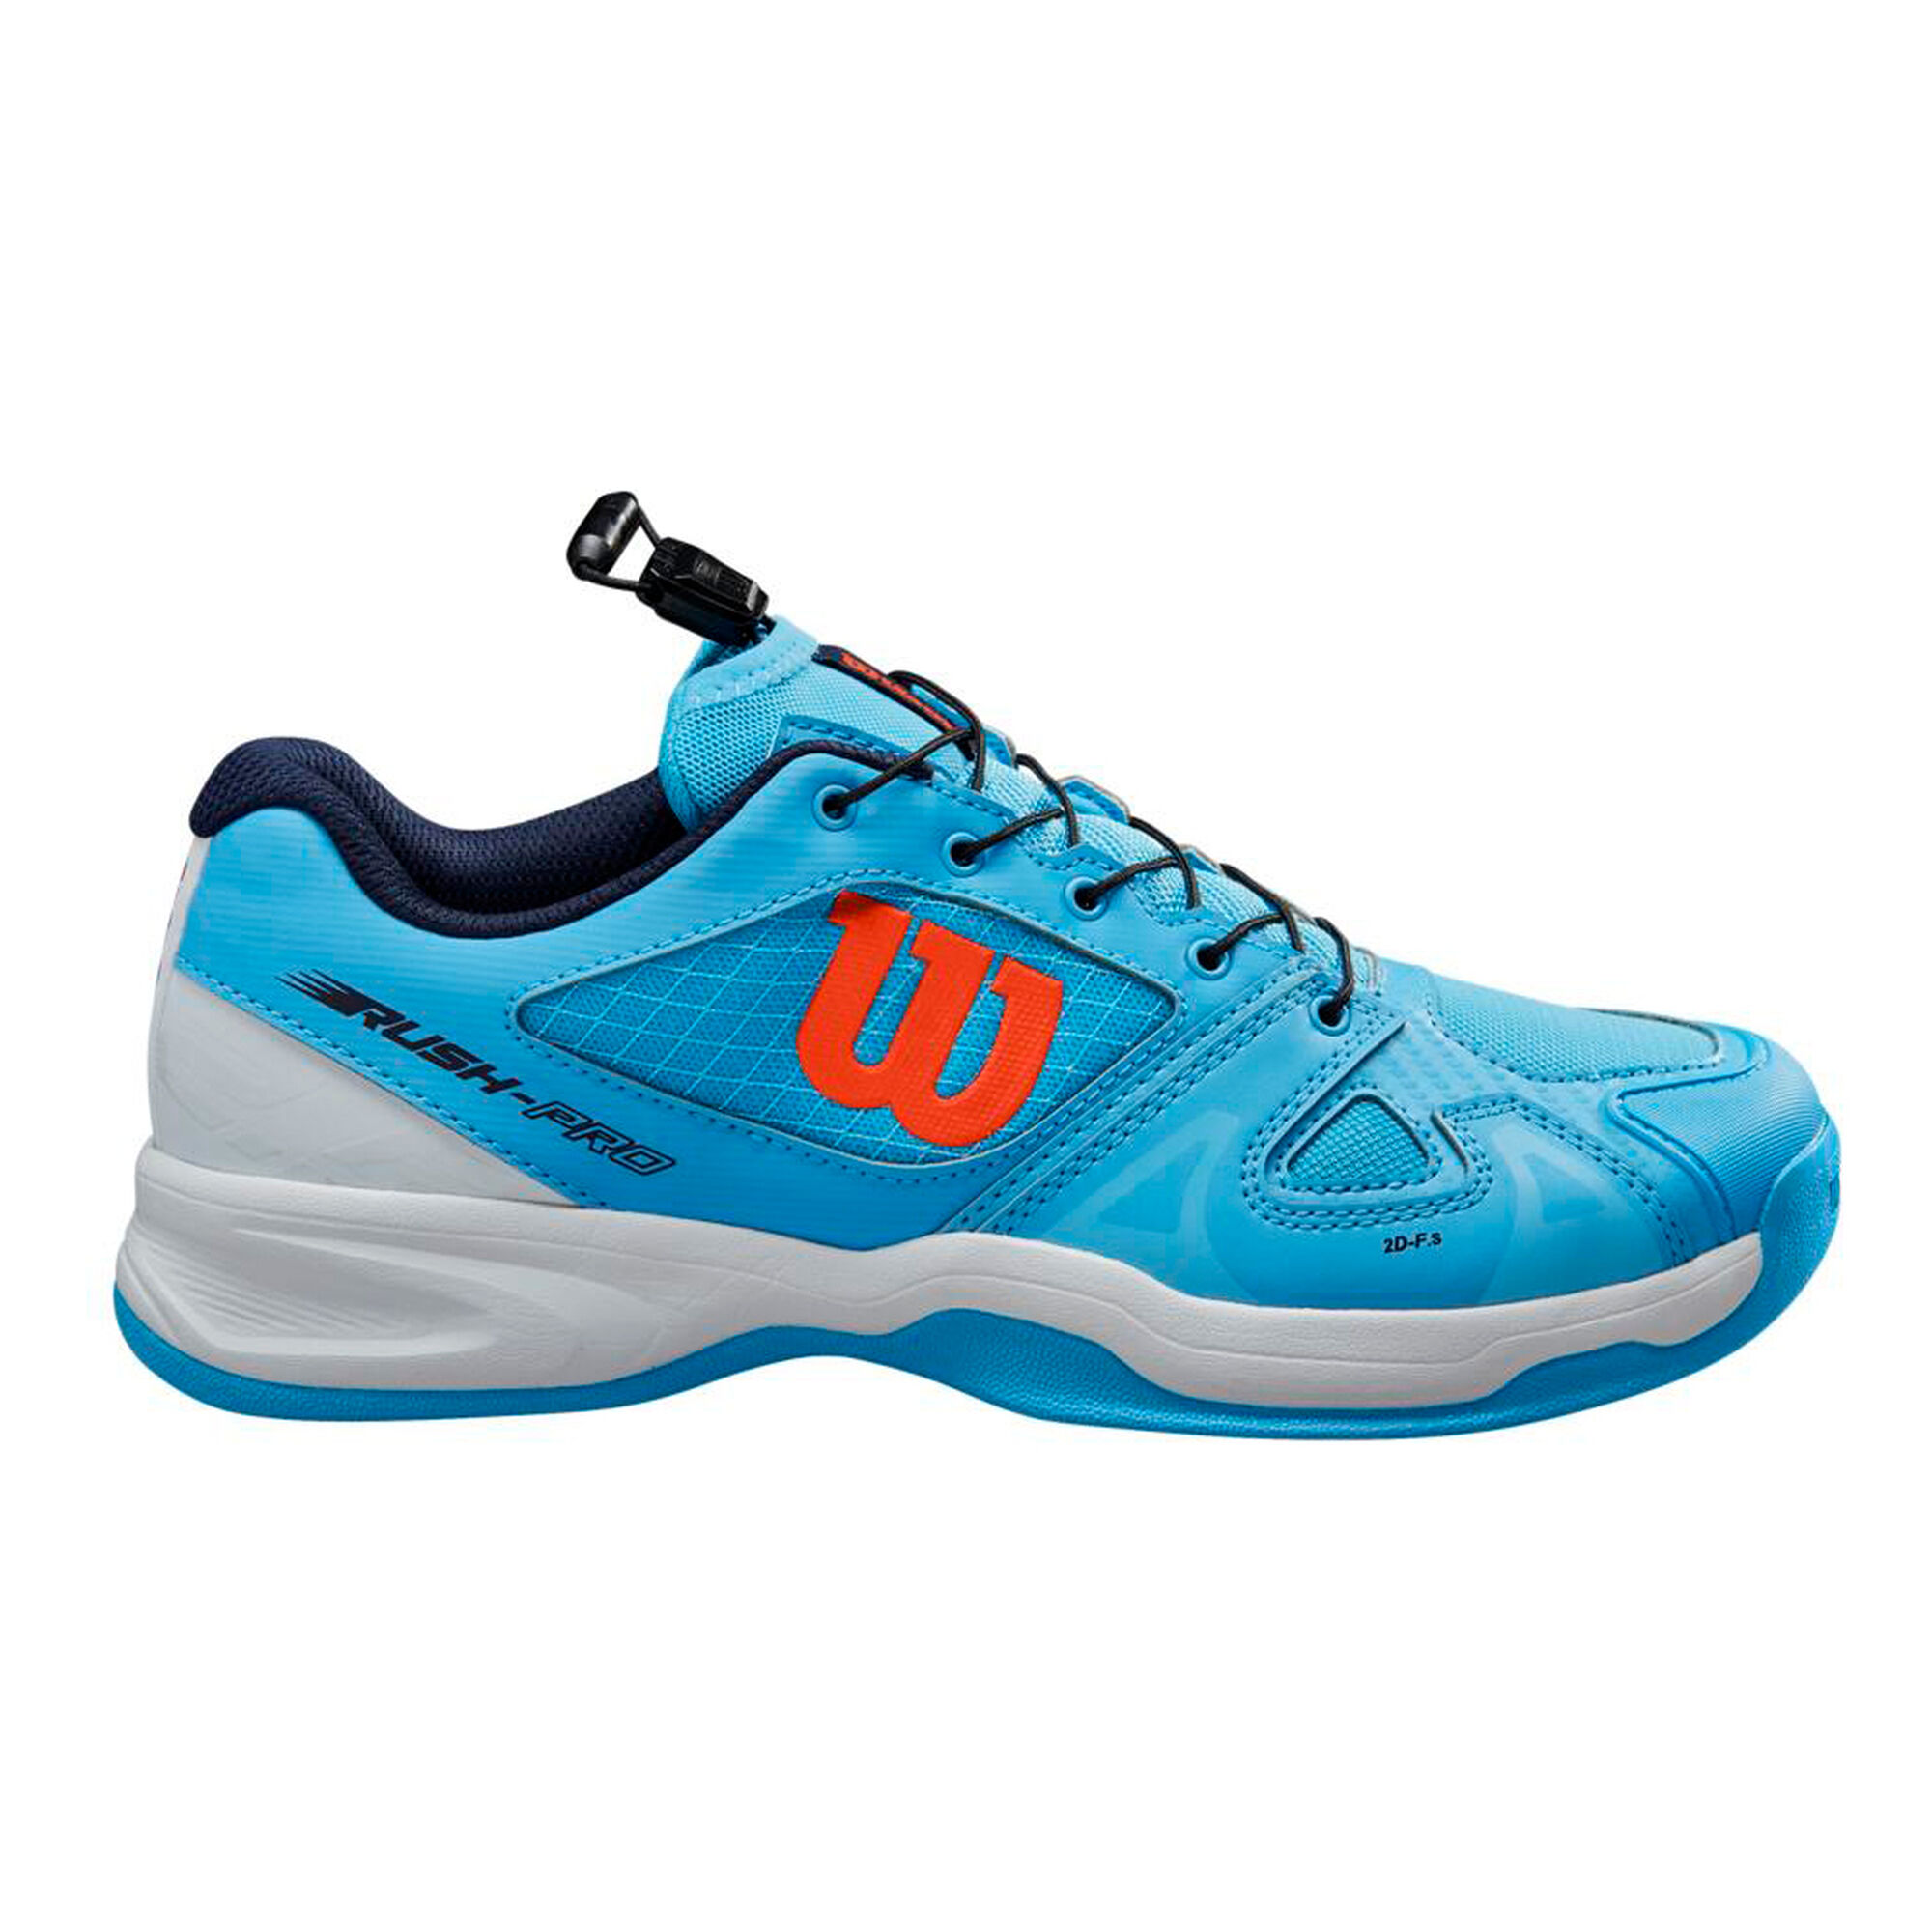 Havoc natuurlijk uitblinken buy Wilson Rush Pro QL Carpet Shoe Kids - Light Blue, Orange online | Tennis -Point